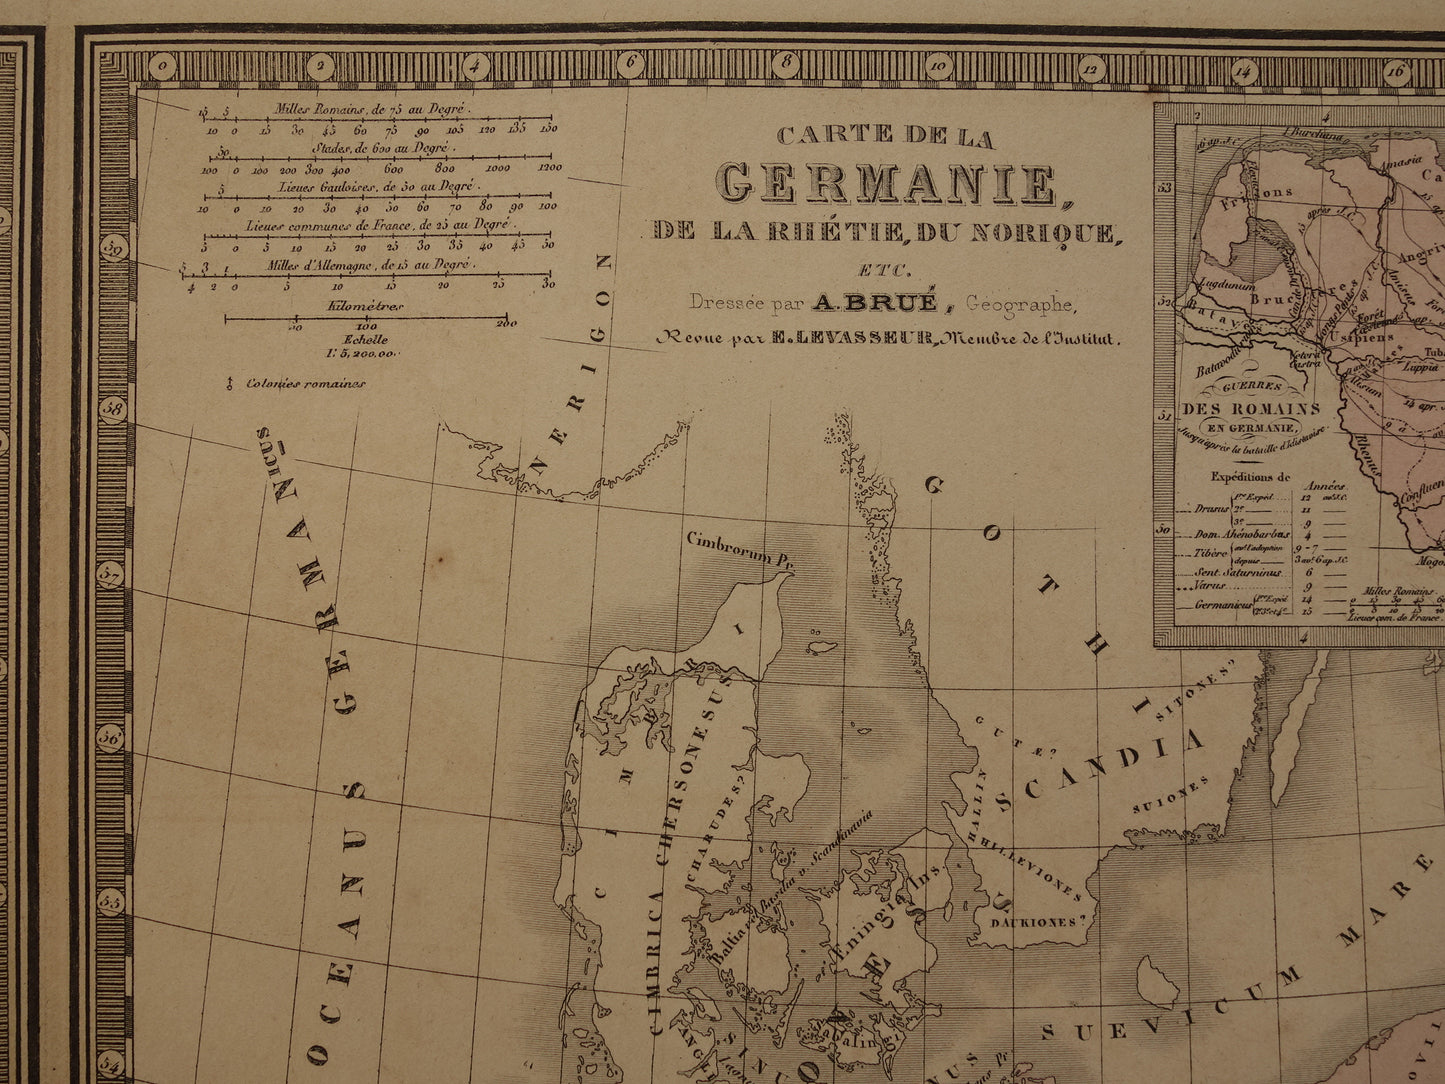 Oude historische kaart van Groot-Brittanië en Duitsland in de klassieke oudheid 1876 originele antieke handgekleurde kaart poster van Romeinse Rijk Brittannia Hibernia Germania